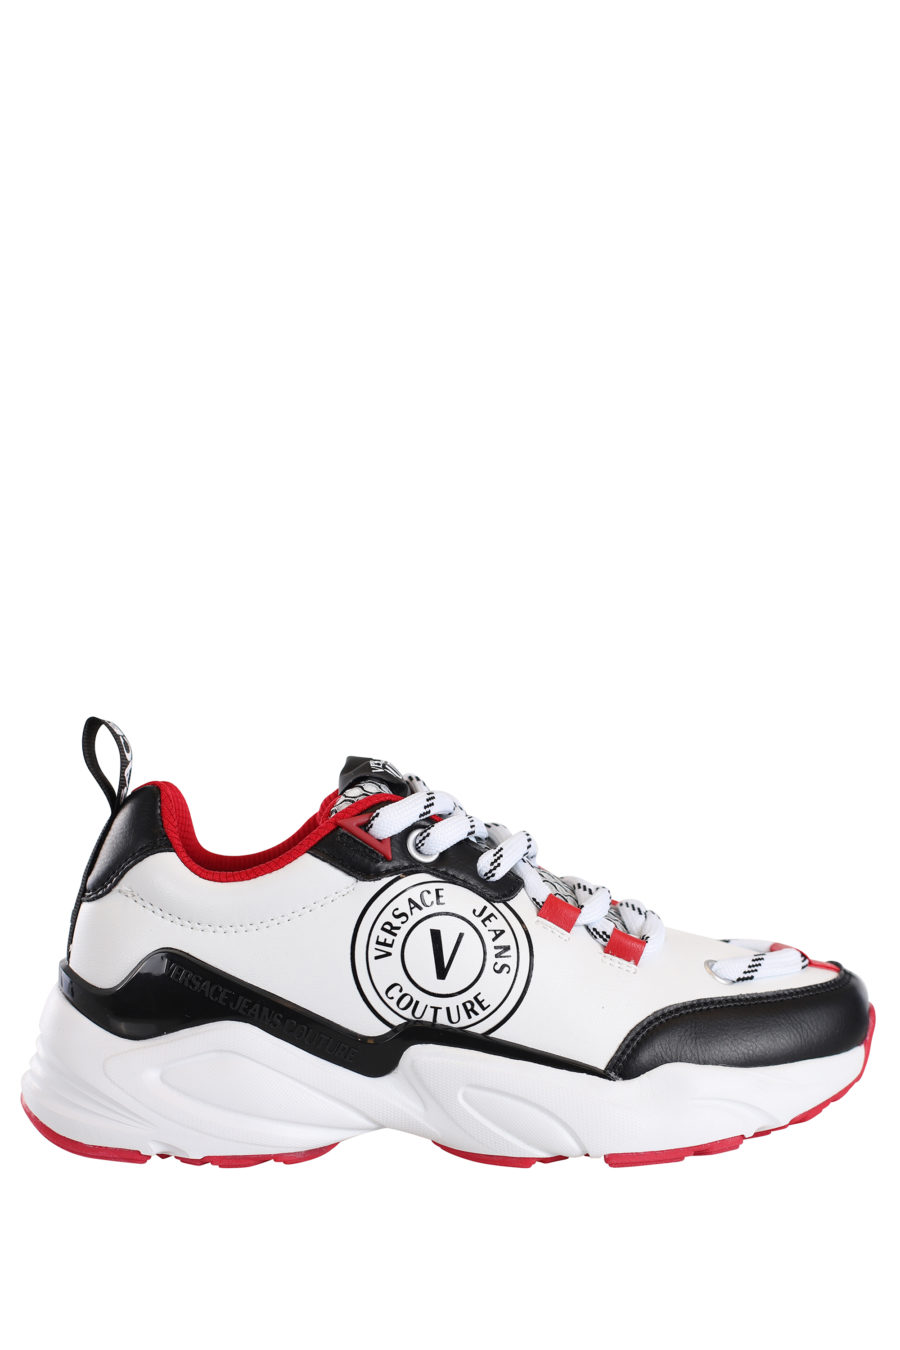 Zapatillas blancas con detalles negros y rojos "Wave" - IMG 0189